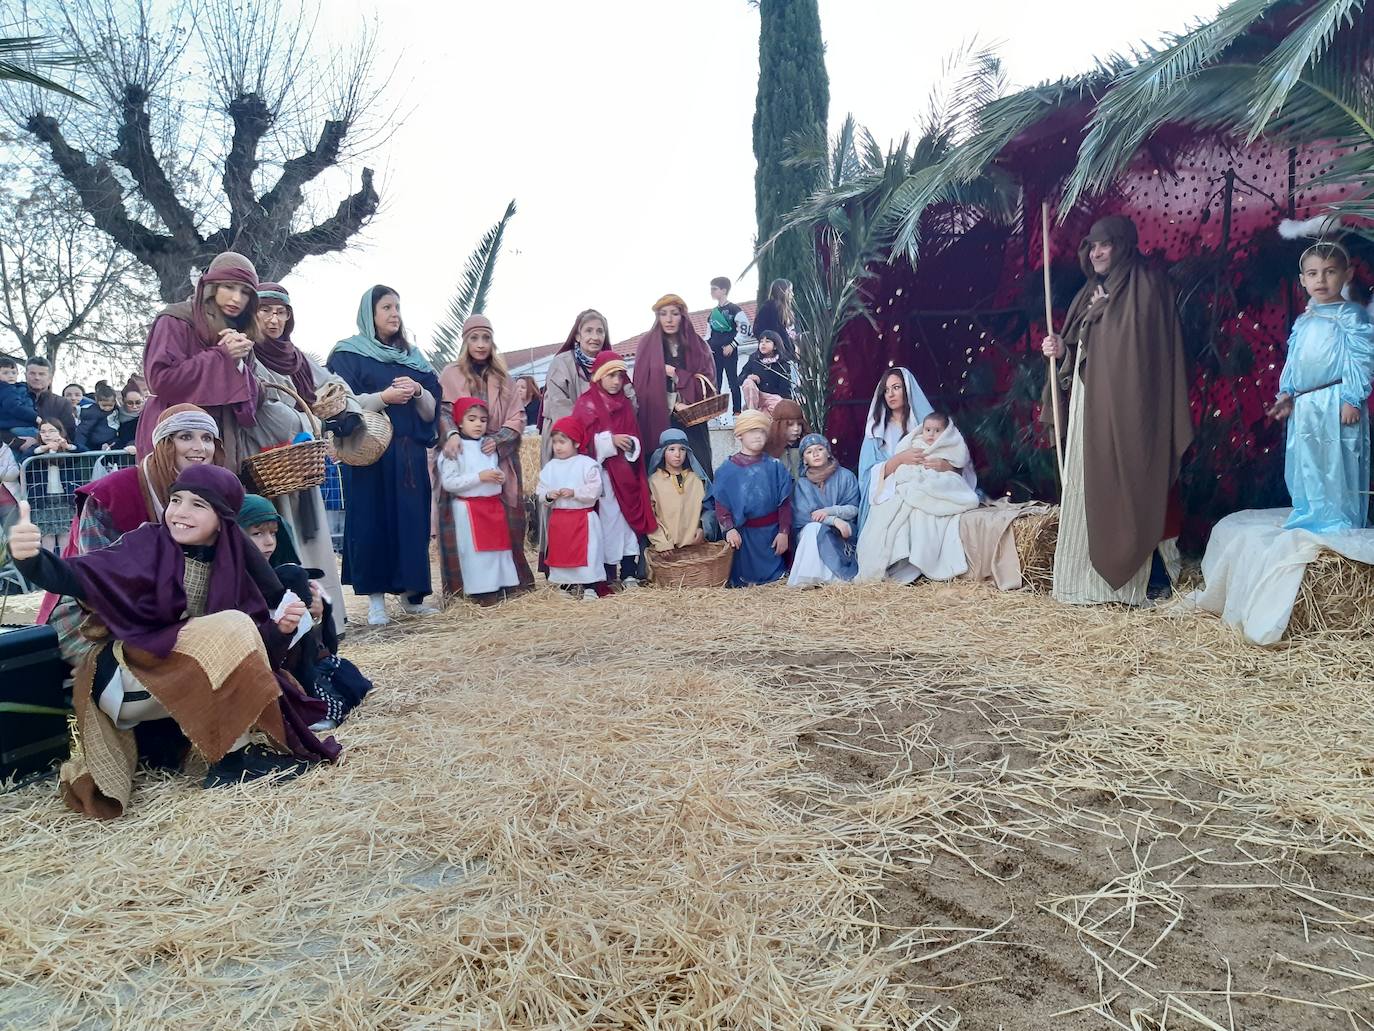 Imagen principal - Tarde de ilusión en Casar de Cáceres por la llegada de los Reyes Magos